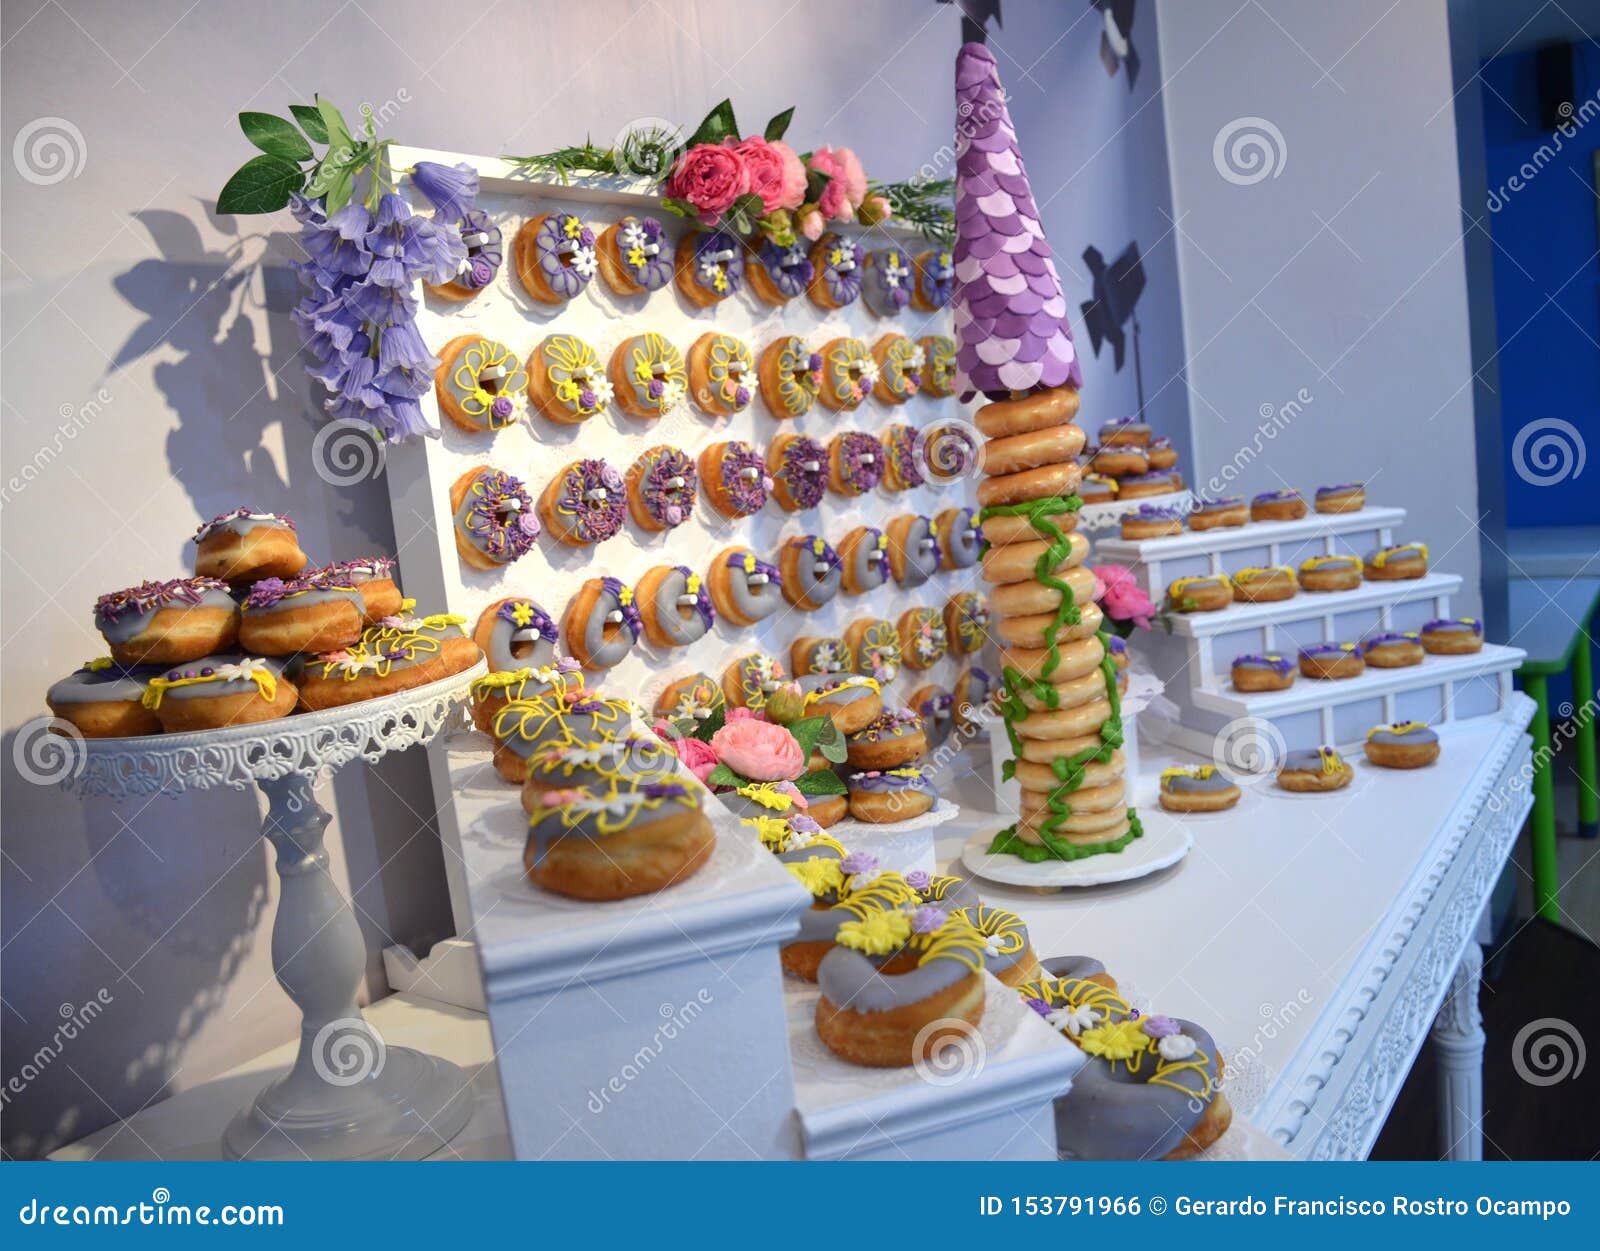 rapunzel inspired doughnut birthday cake